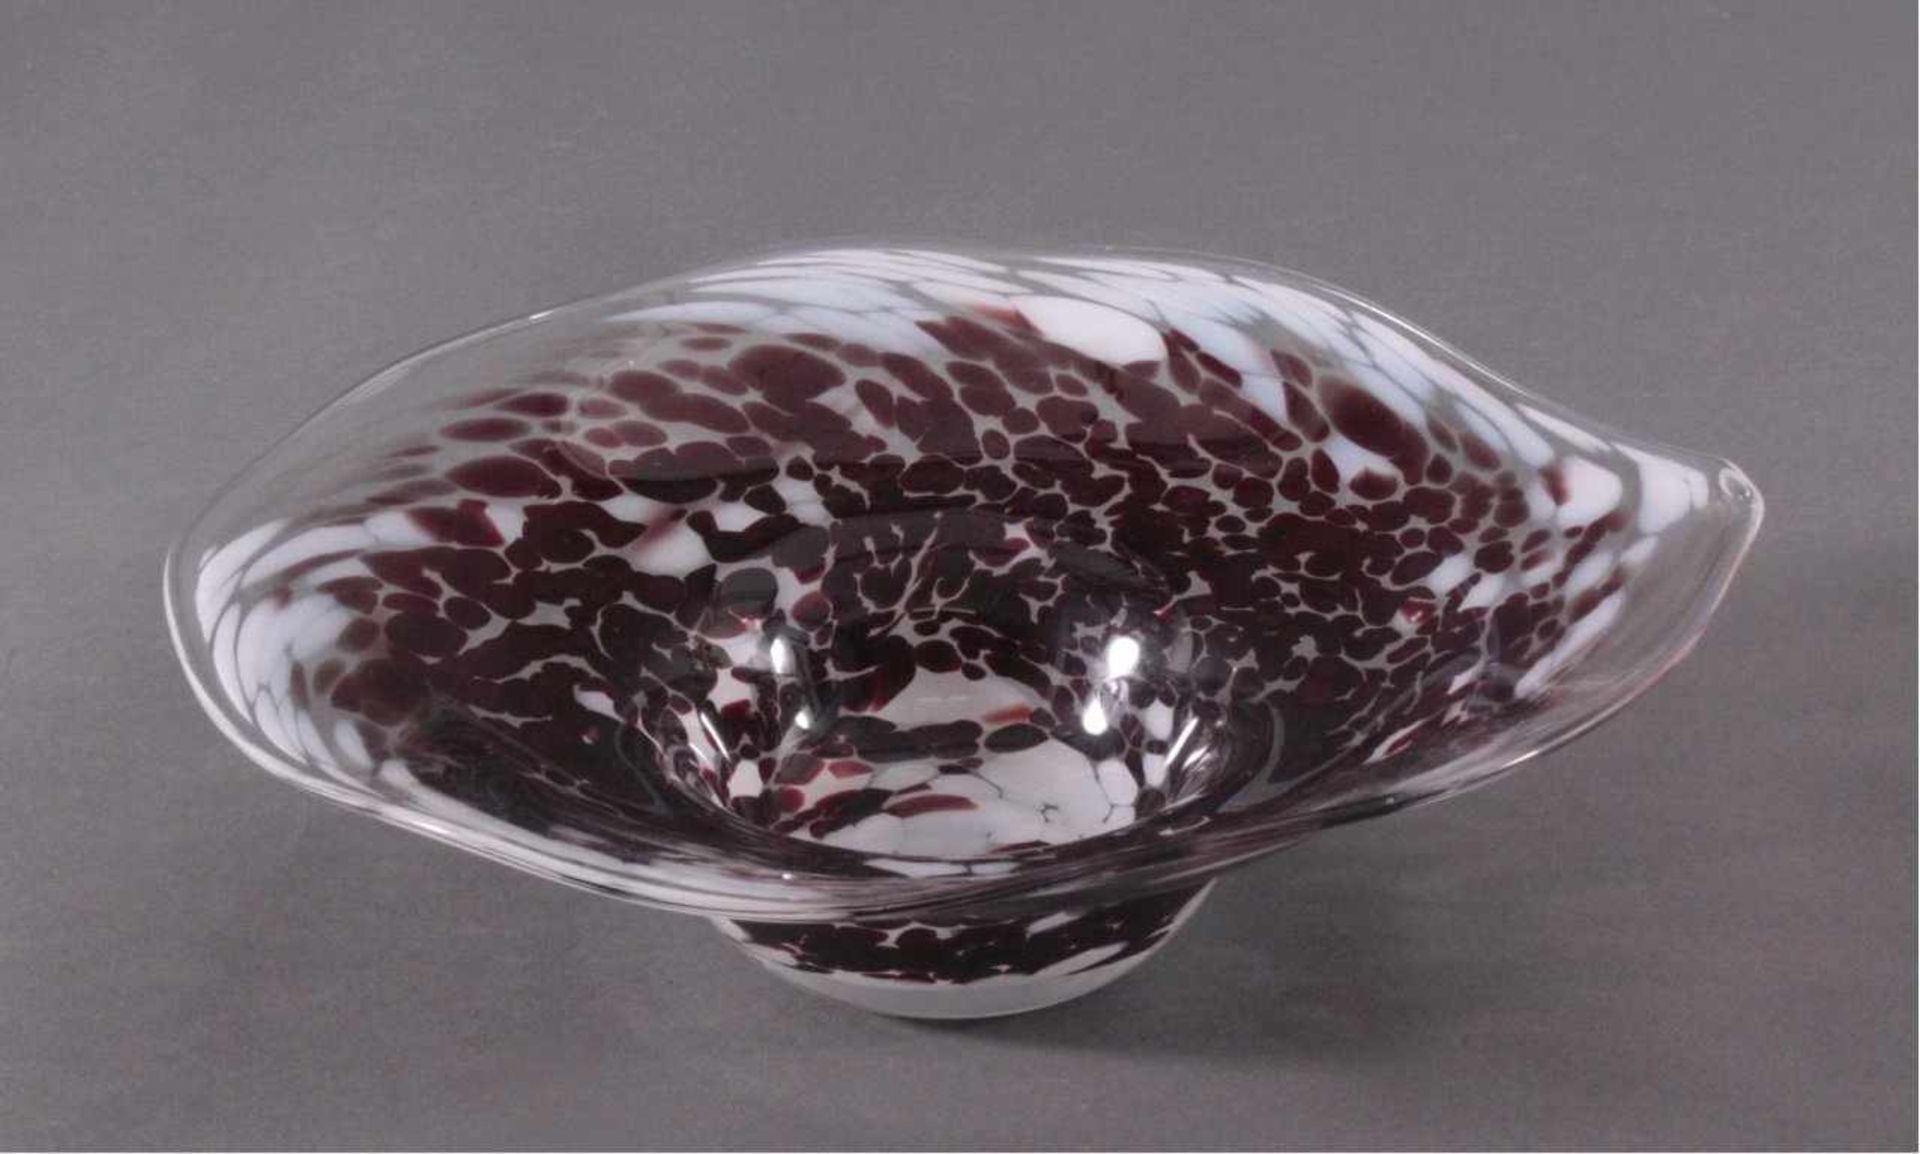 GlasschaleKlarglas, weiße und braune Einschmelzungen, tief gemuldeteSchale mit weit ausgestellten - Image 2 of 2